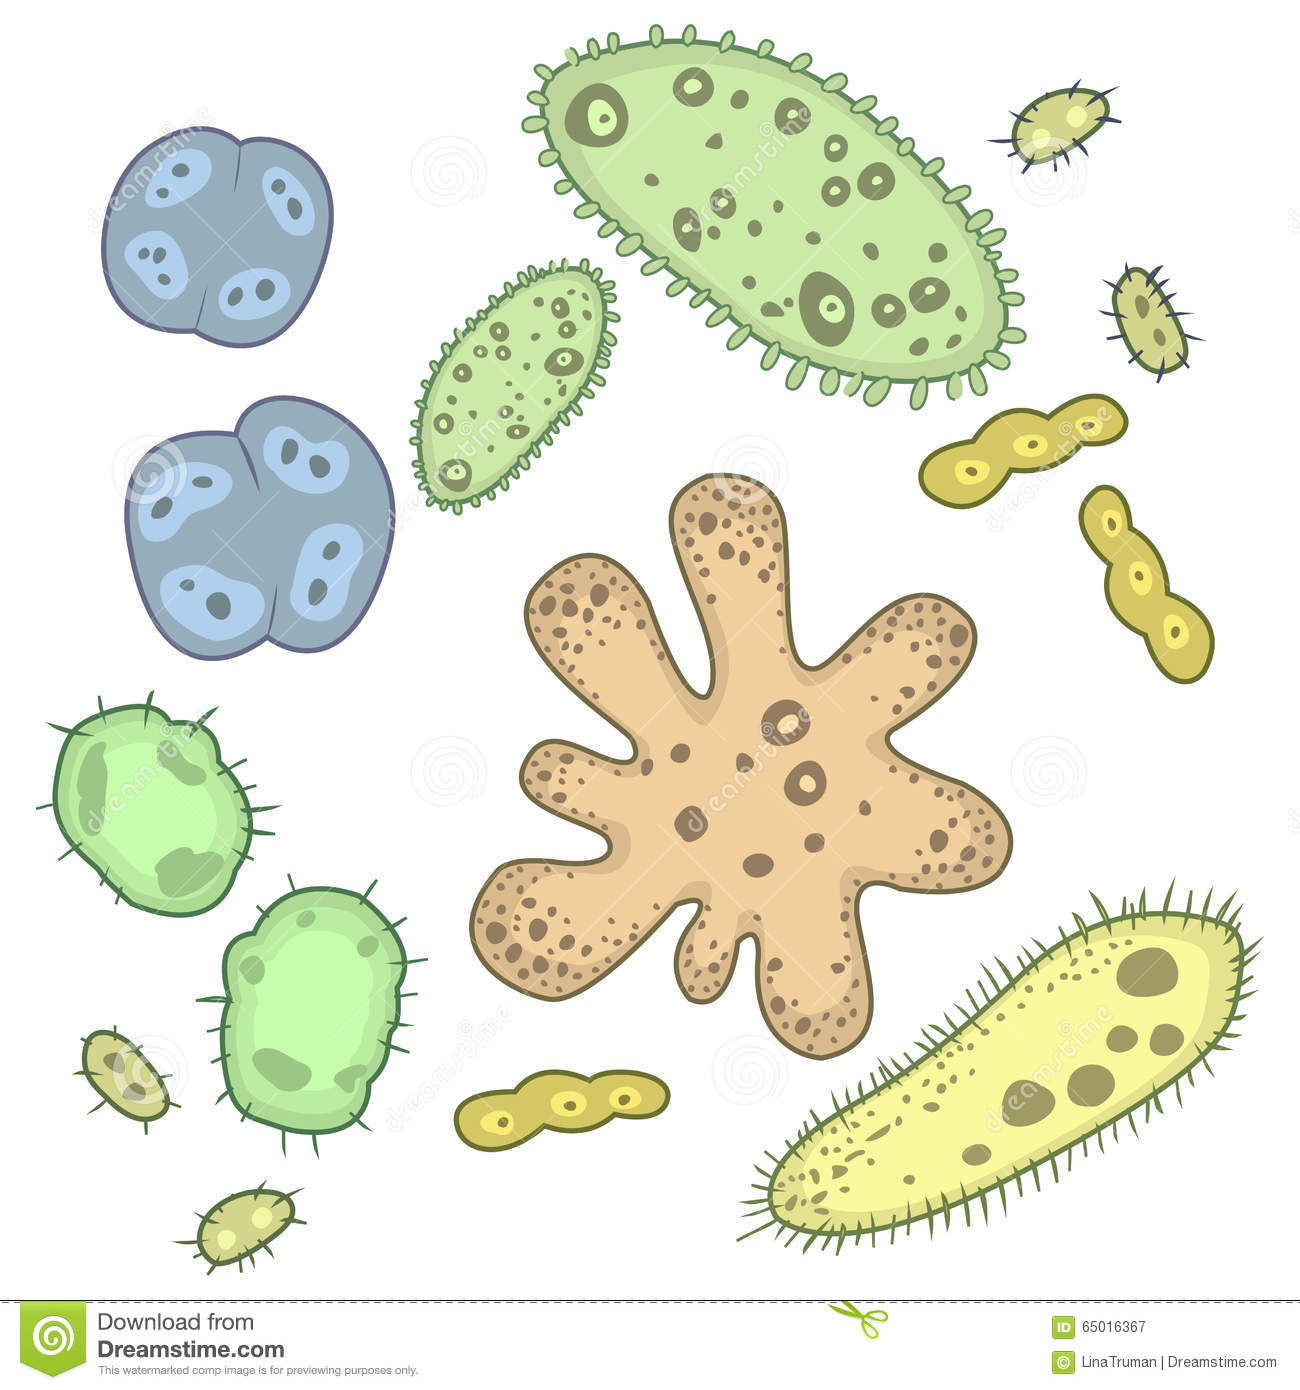 microorganismos y virus